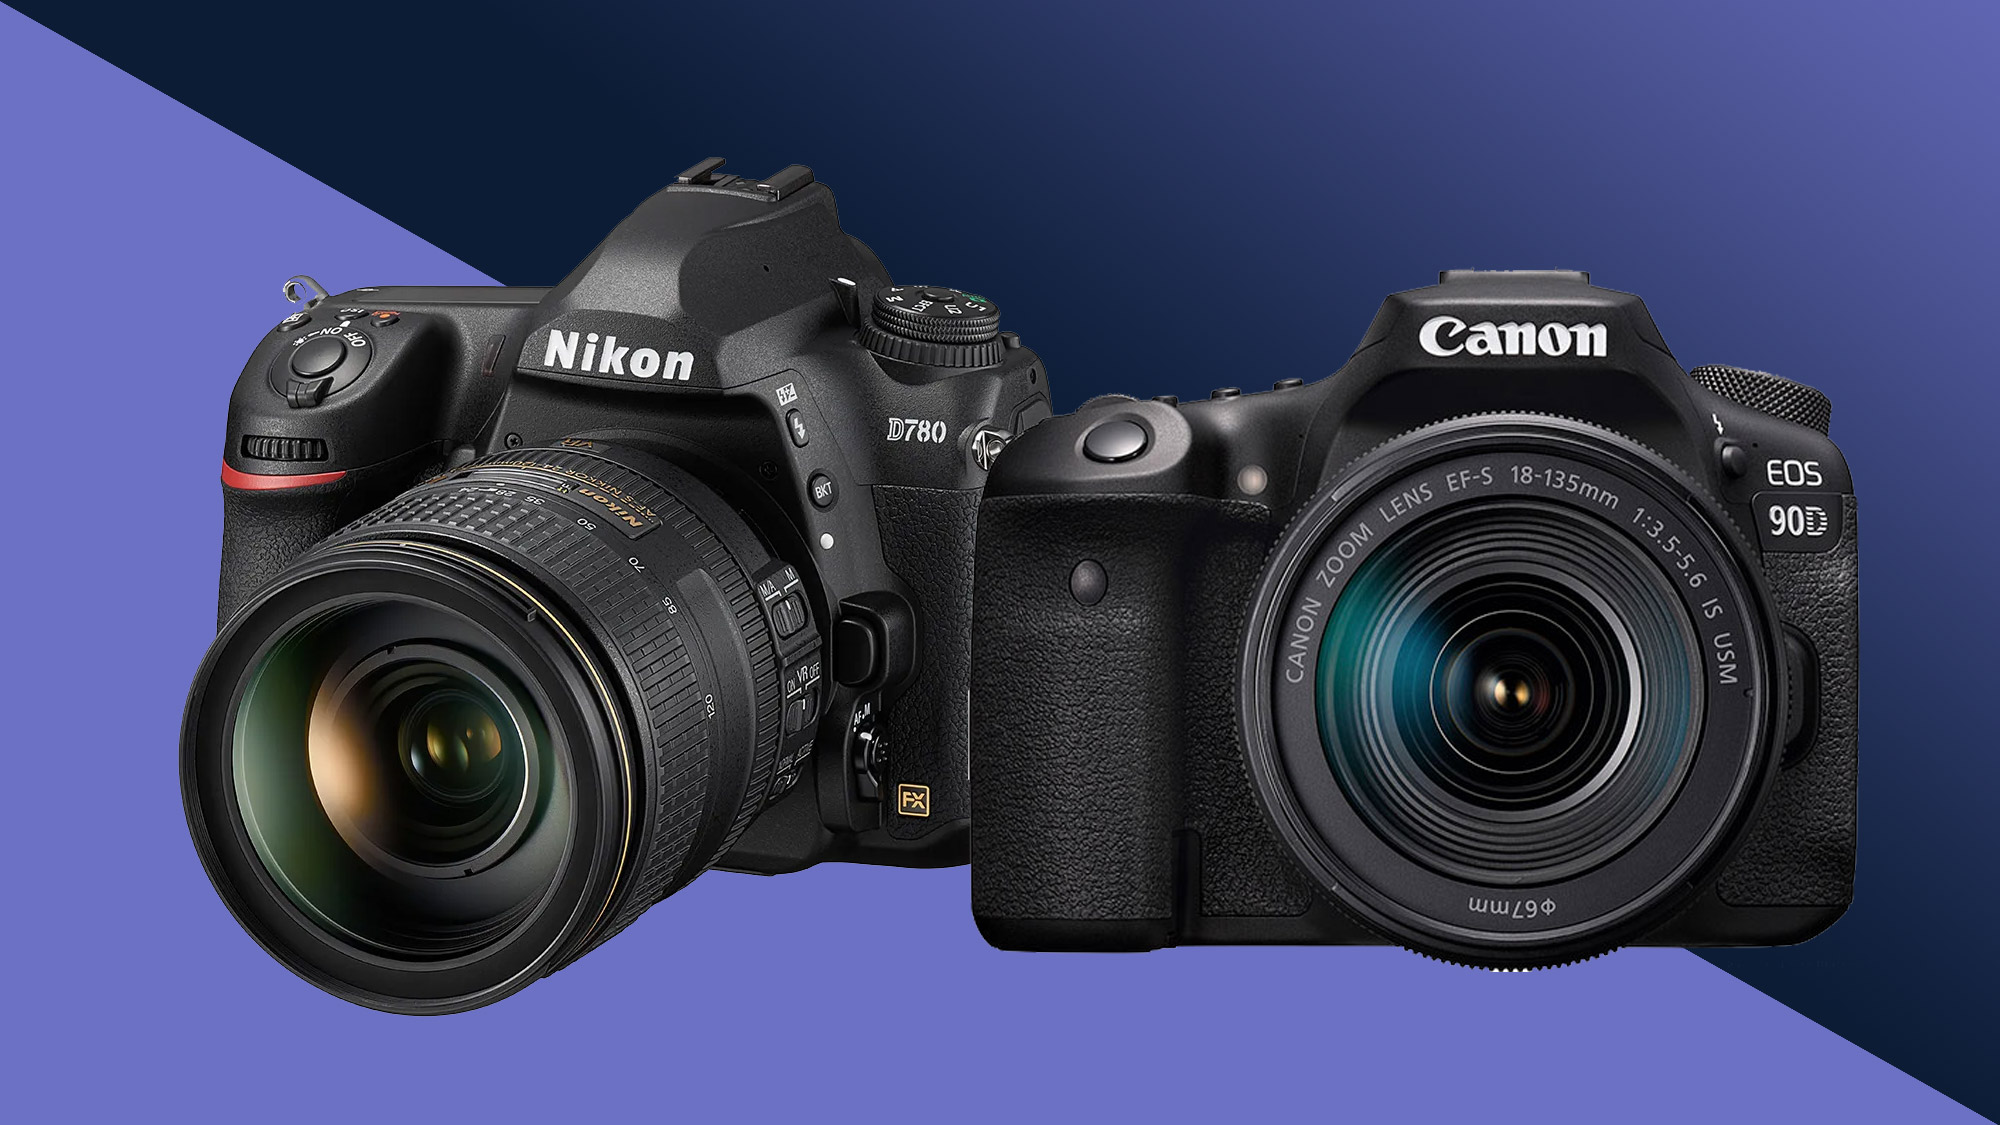 Nikon D780 v Nikon D750: 9 key differences – DigitalRev